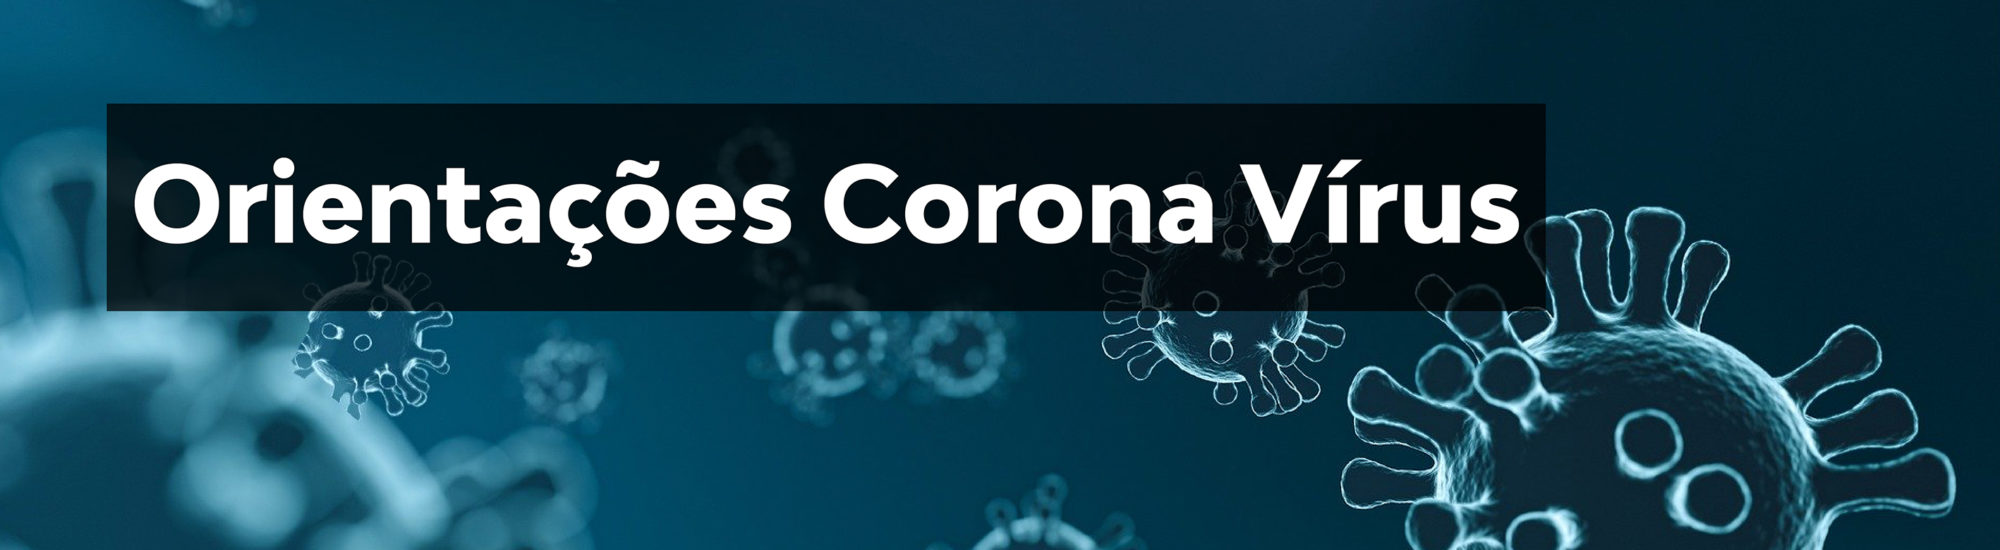 Orientações: Corona Vírus